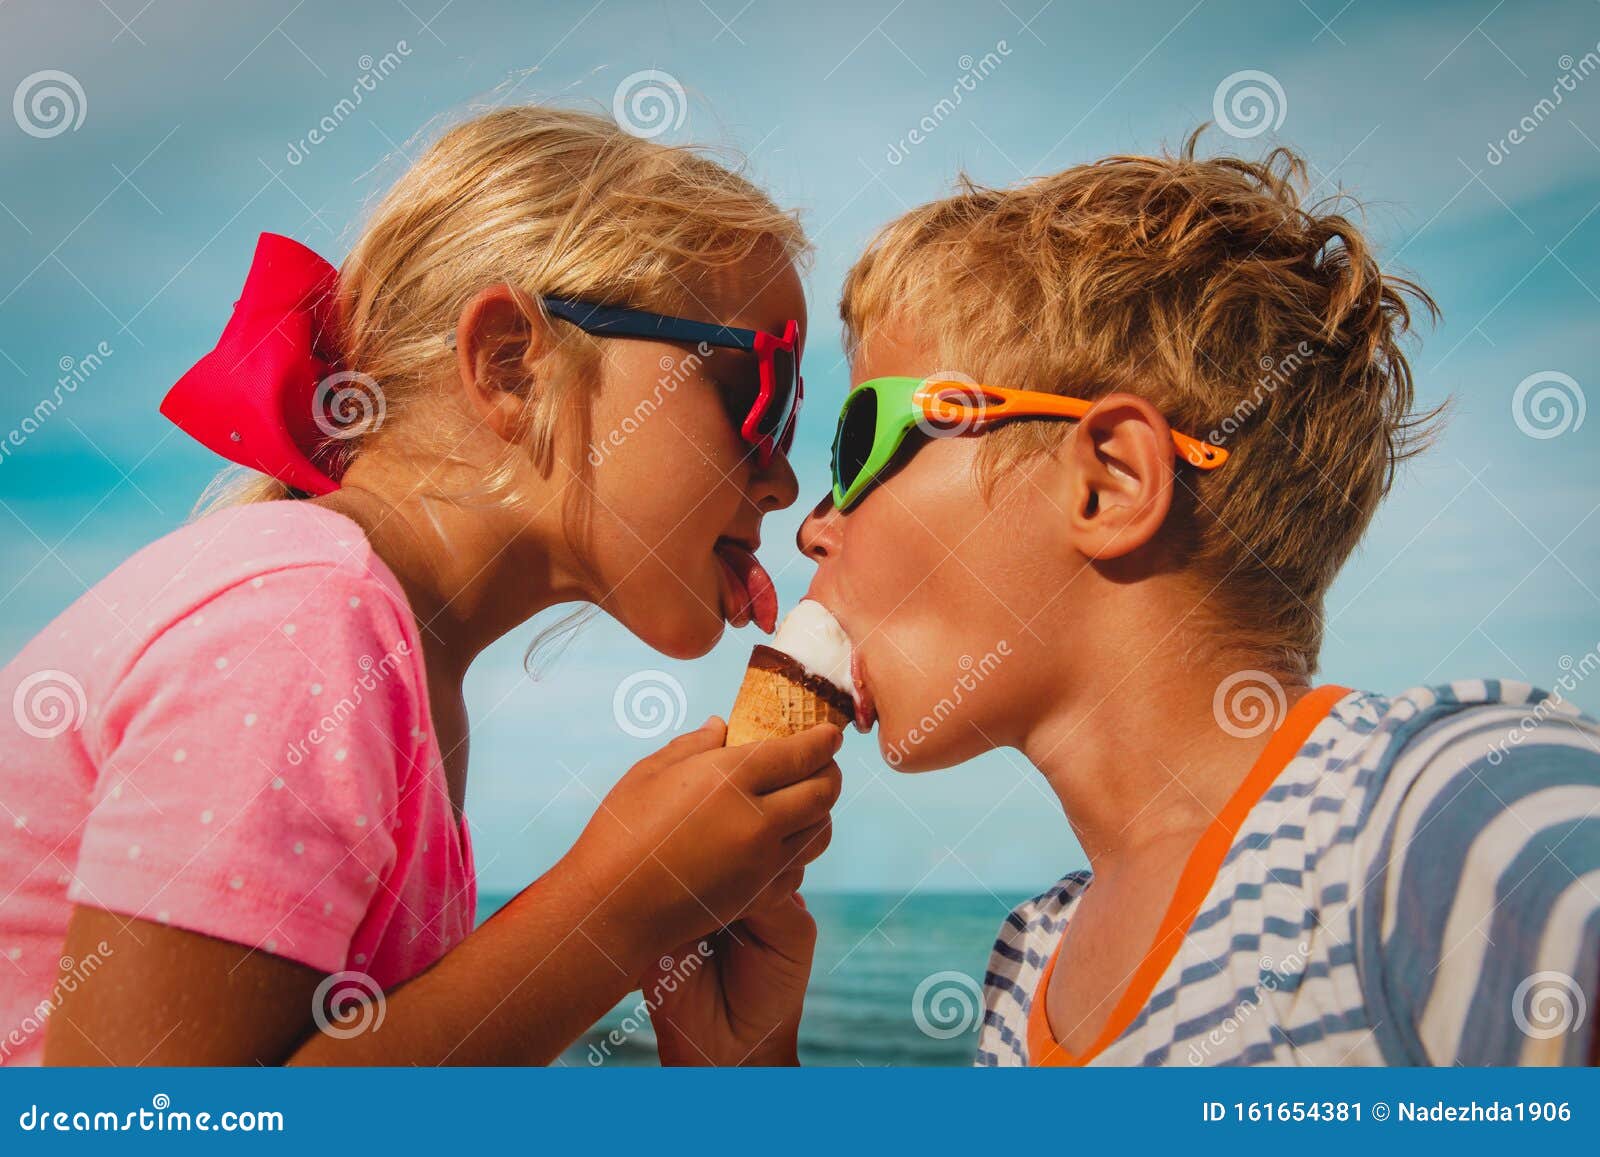 Licking boy girl. Дети едят мороженое на пляже. Мальчик на пляже ест мороженое. Дети с мороженым на море.